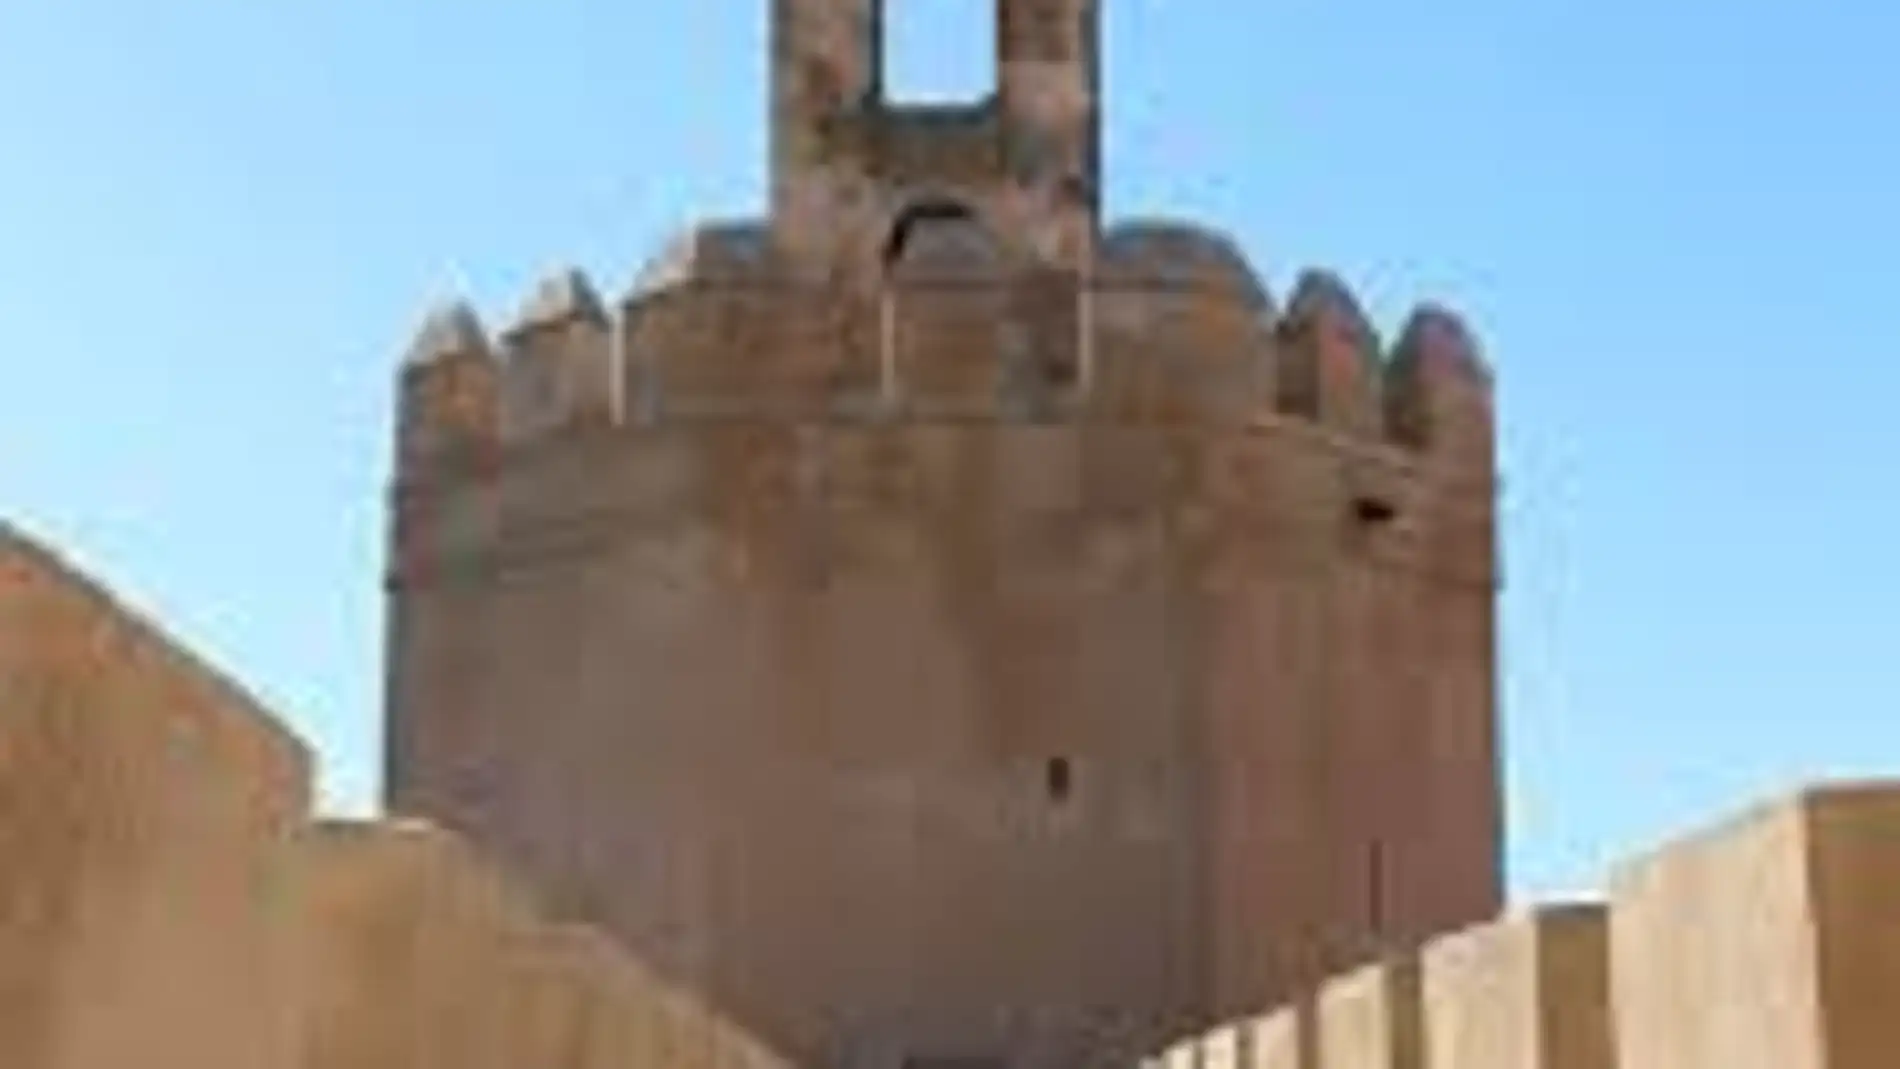 La campaña de mecenazgo reúne 33.000 euros para la réplica de la campana de la Torre de Espantaperros de Badajoz